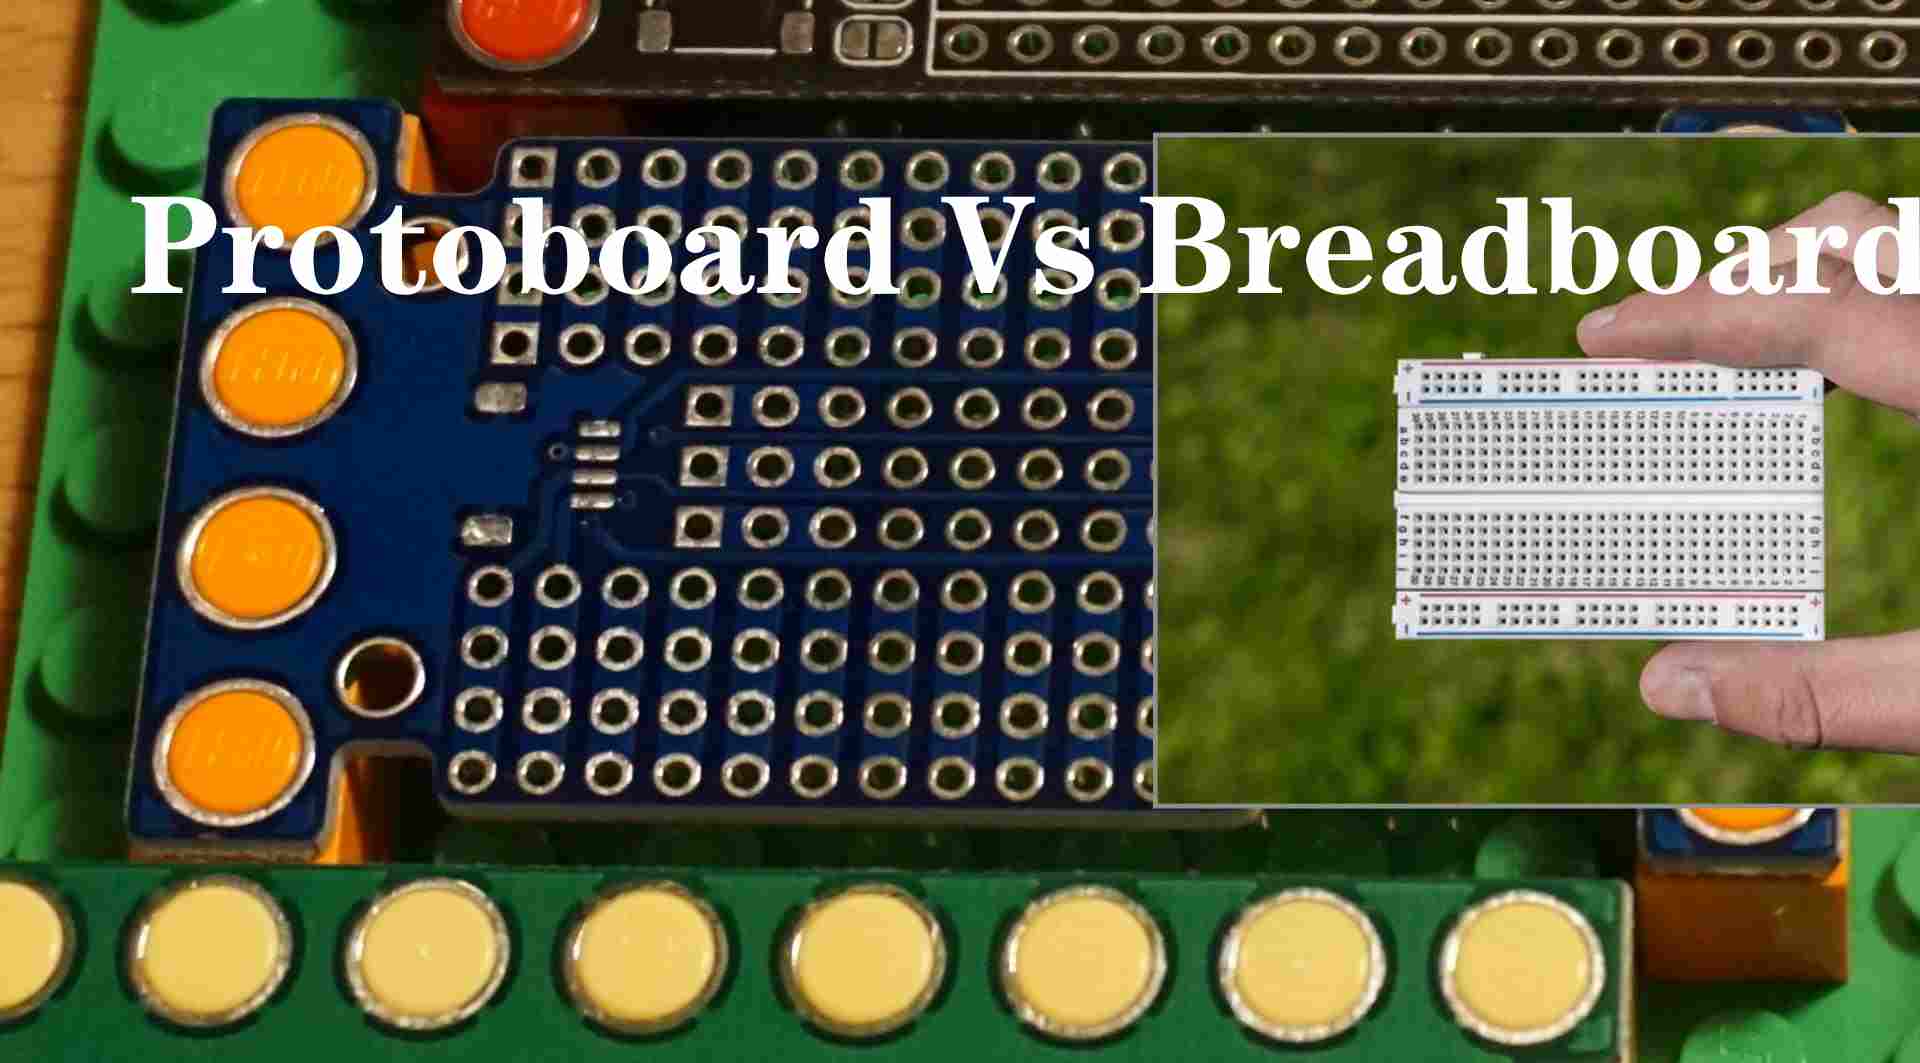 Protoboard-vs-Breadboard-1